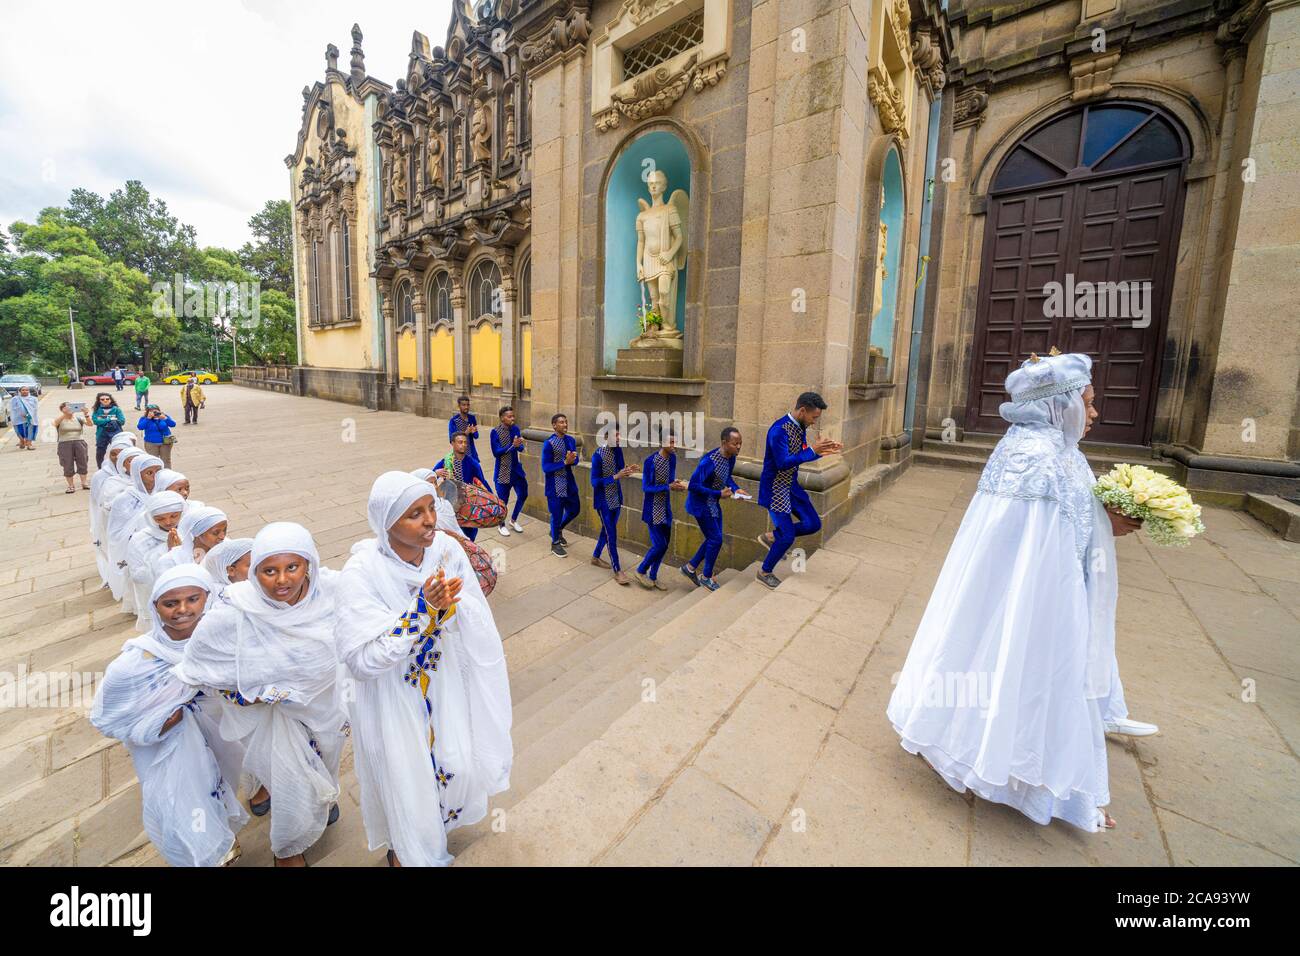 Hommes et femmes avec des vêtements traditionnels lors d'une célébration religieuse, Cathédrale de la Sainte Trinité, Addis-Abeba, Ethiopie, Afrique Banque D'Images